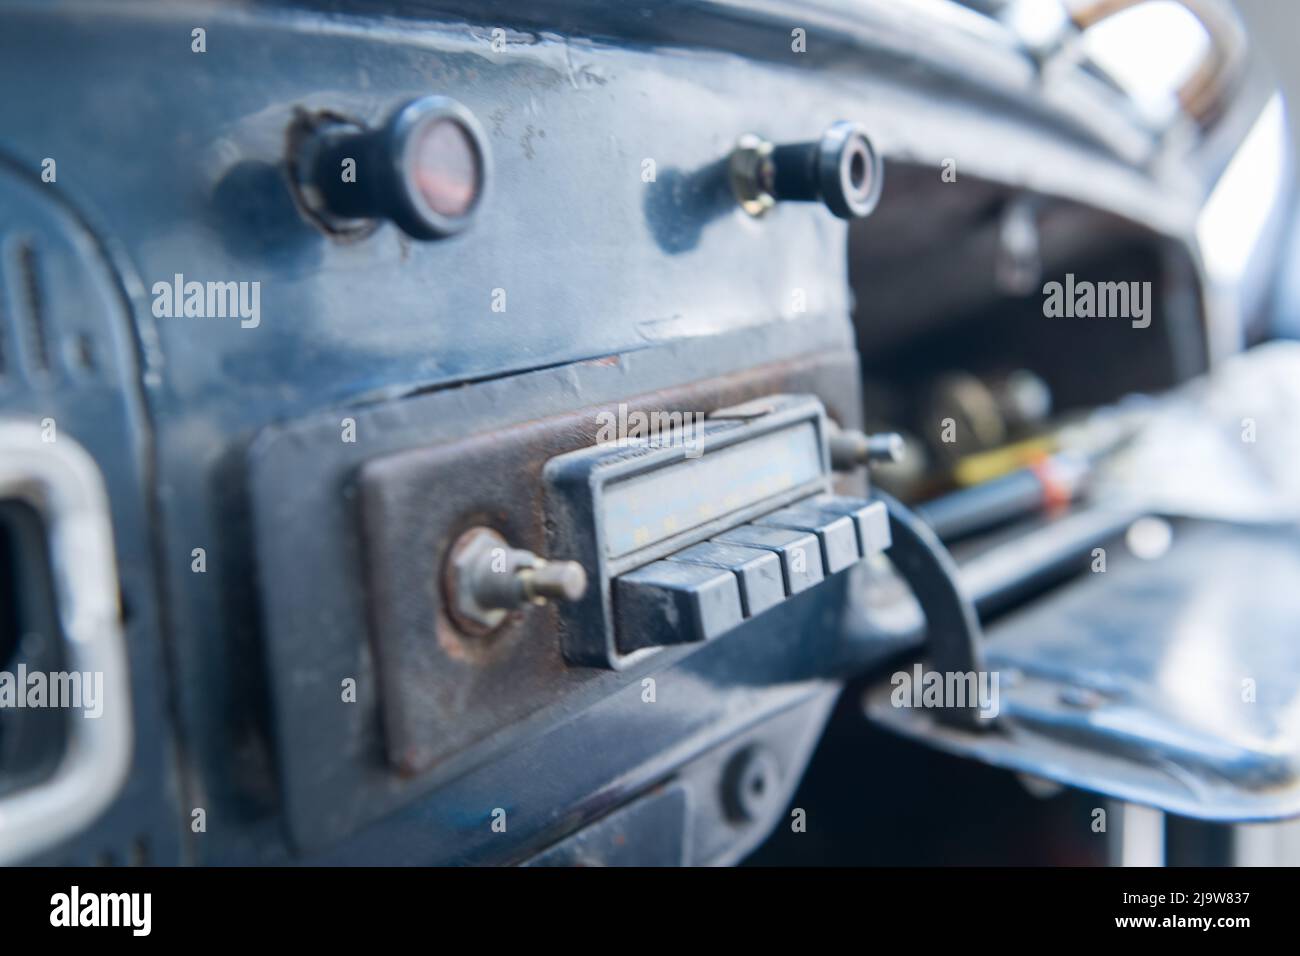 Nahaufnahme des Innenraums eines alten volkswagen-Käfers, der im Vordergrund das alte am/fm-Radio des Autos zeigt. Stockfoto